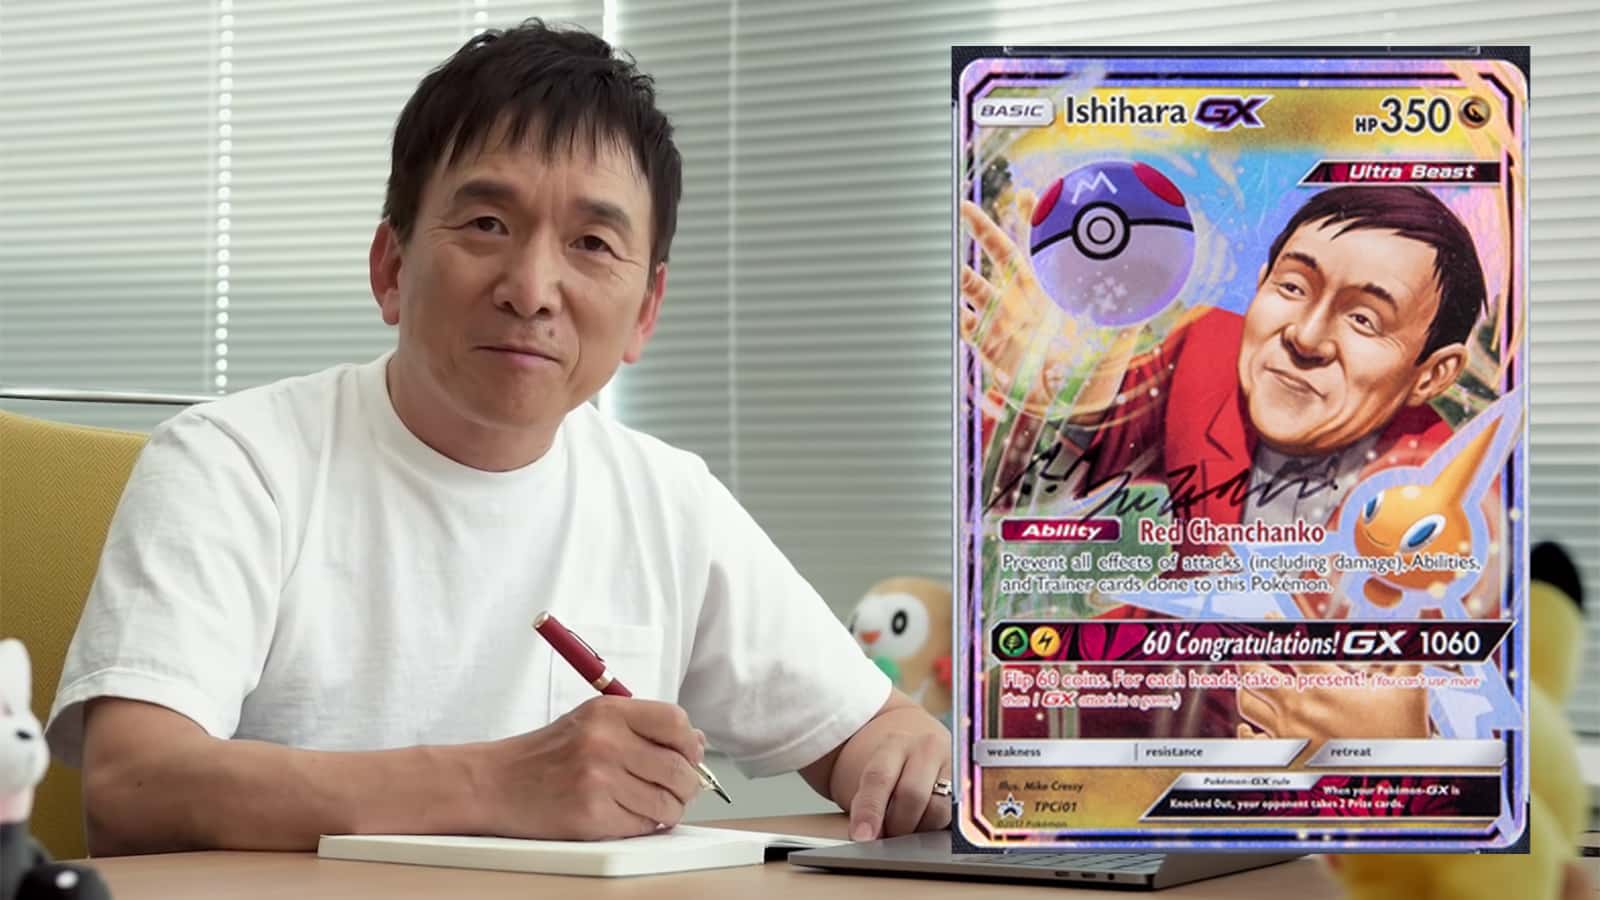 Pokemon Trading Card Tsunekazu Ishihara